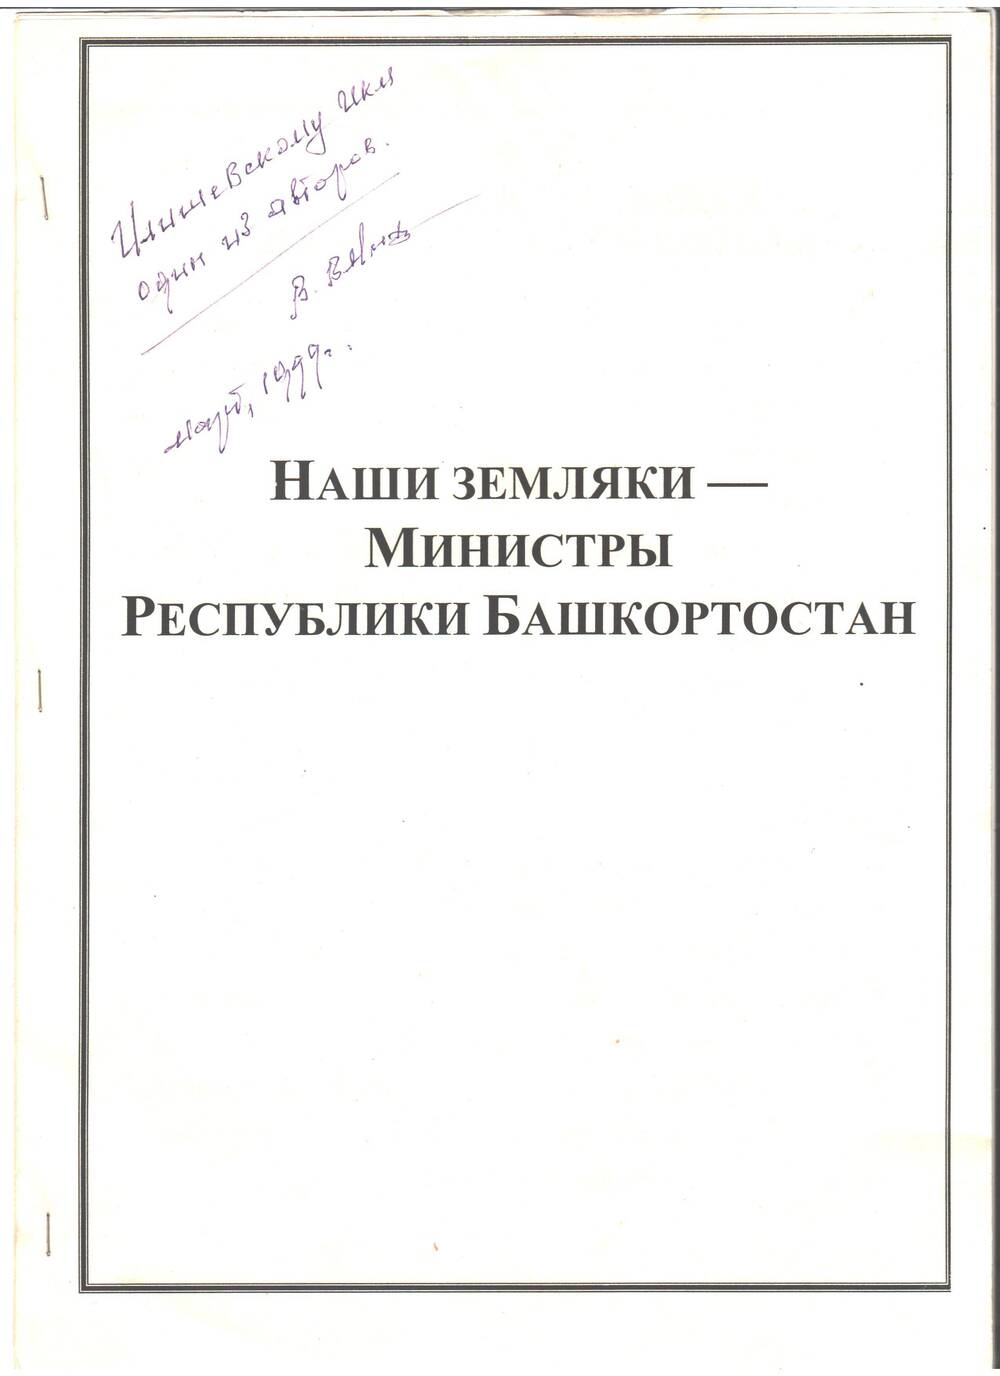 Брошюра Наши земляки - Министры Республики Башкортостан с надписью автора и фотографиями министров из 7 страниц